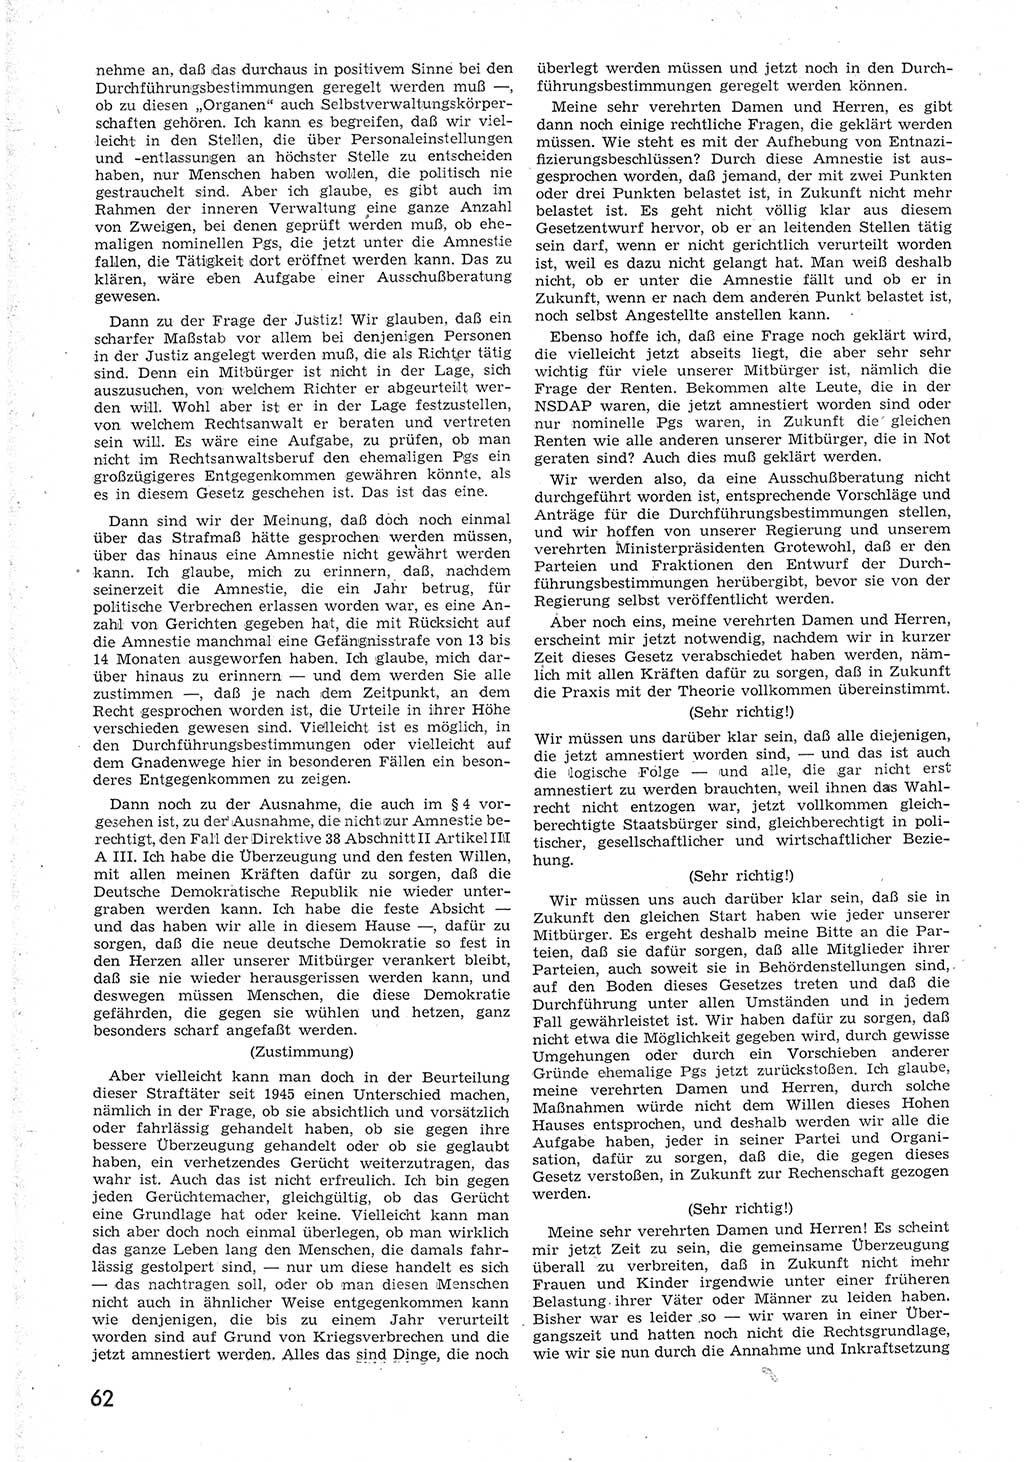 Provisorische Volkskammer (VK) der Deutschen Demokratischen Republik (DDR) 1949-1950, Dokument 74 (Prov. VK DDR 1949-1950, Dok. 74)